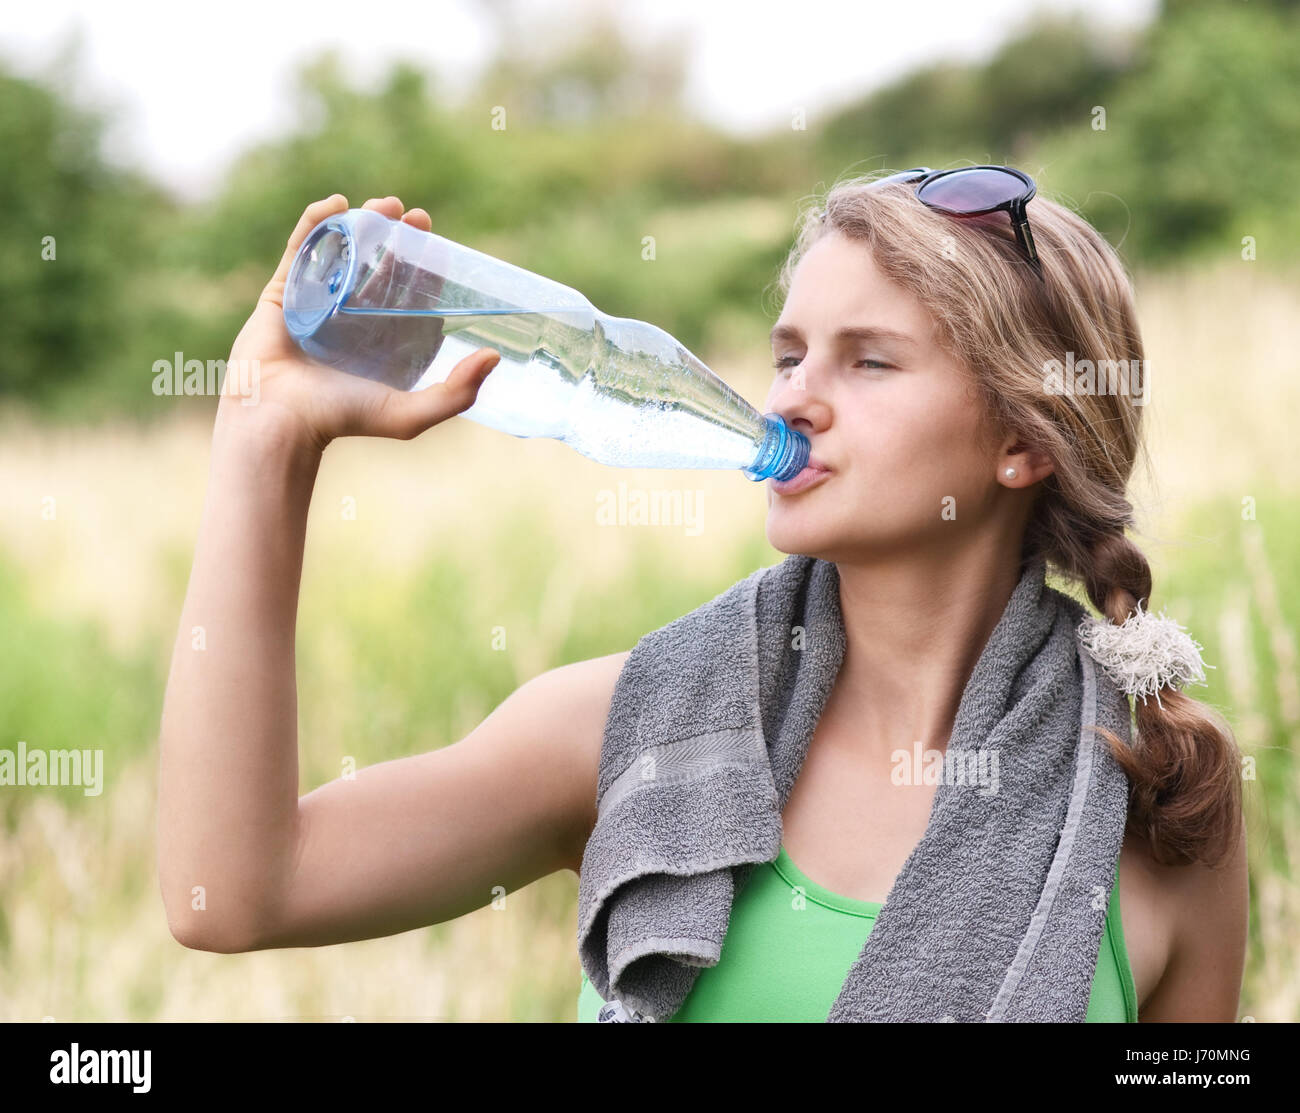 jogger drinking Stock Photo